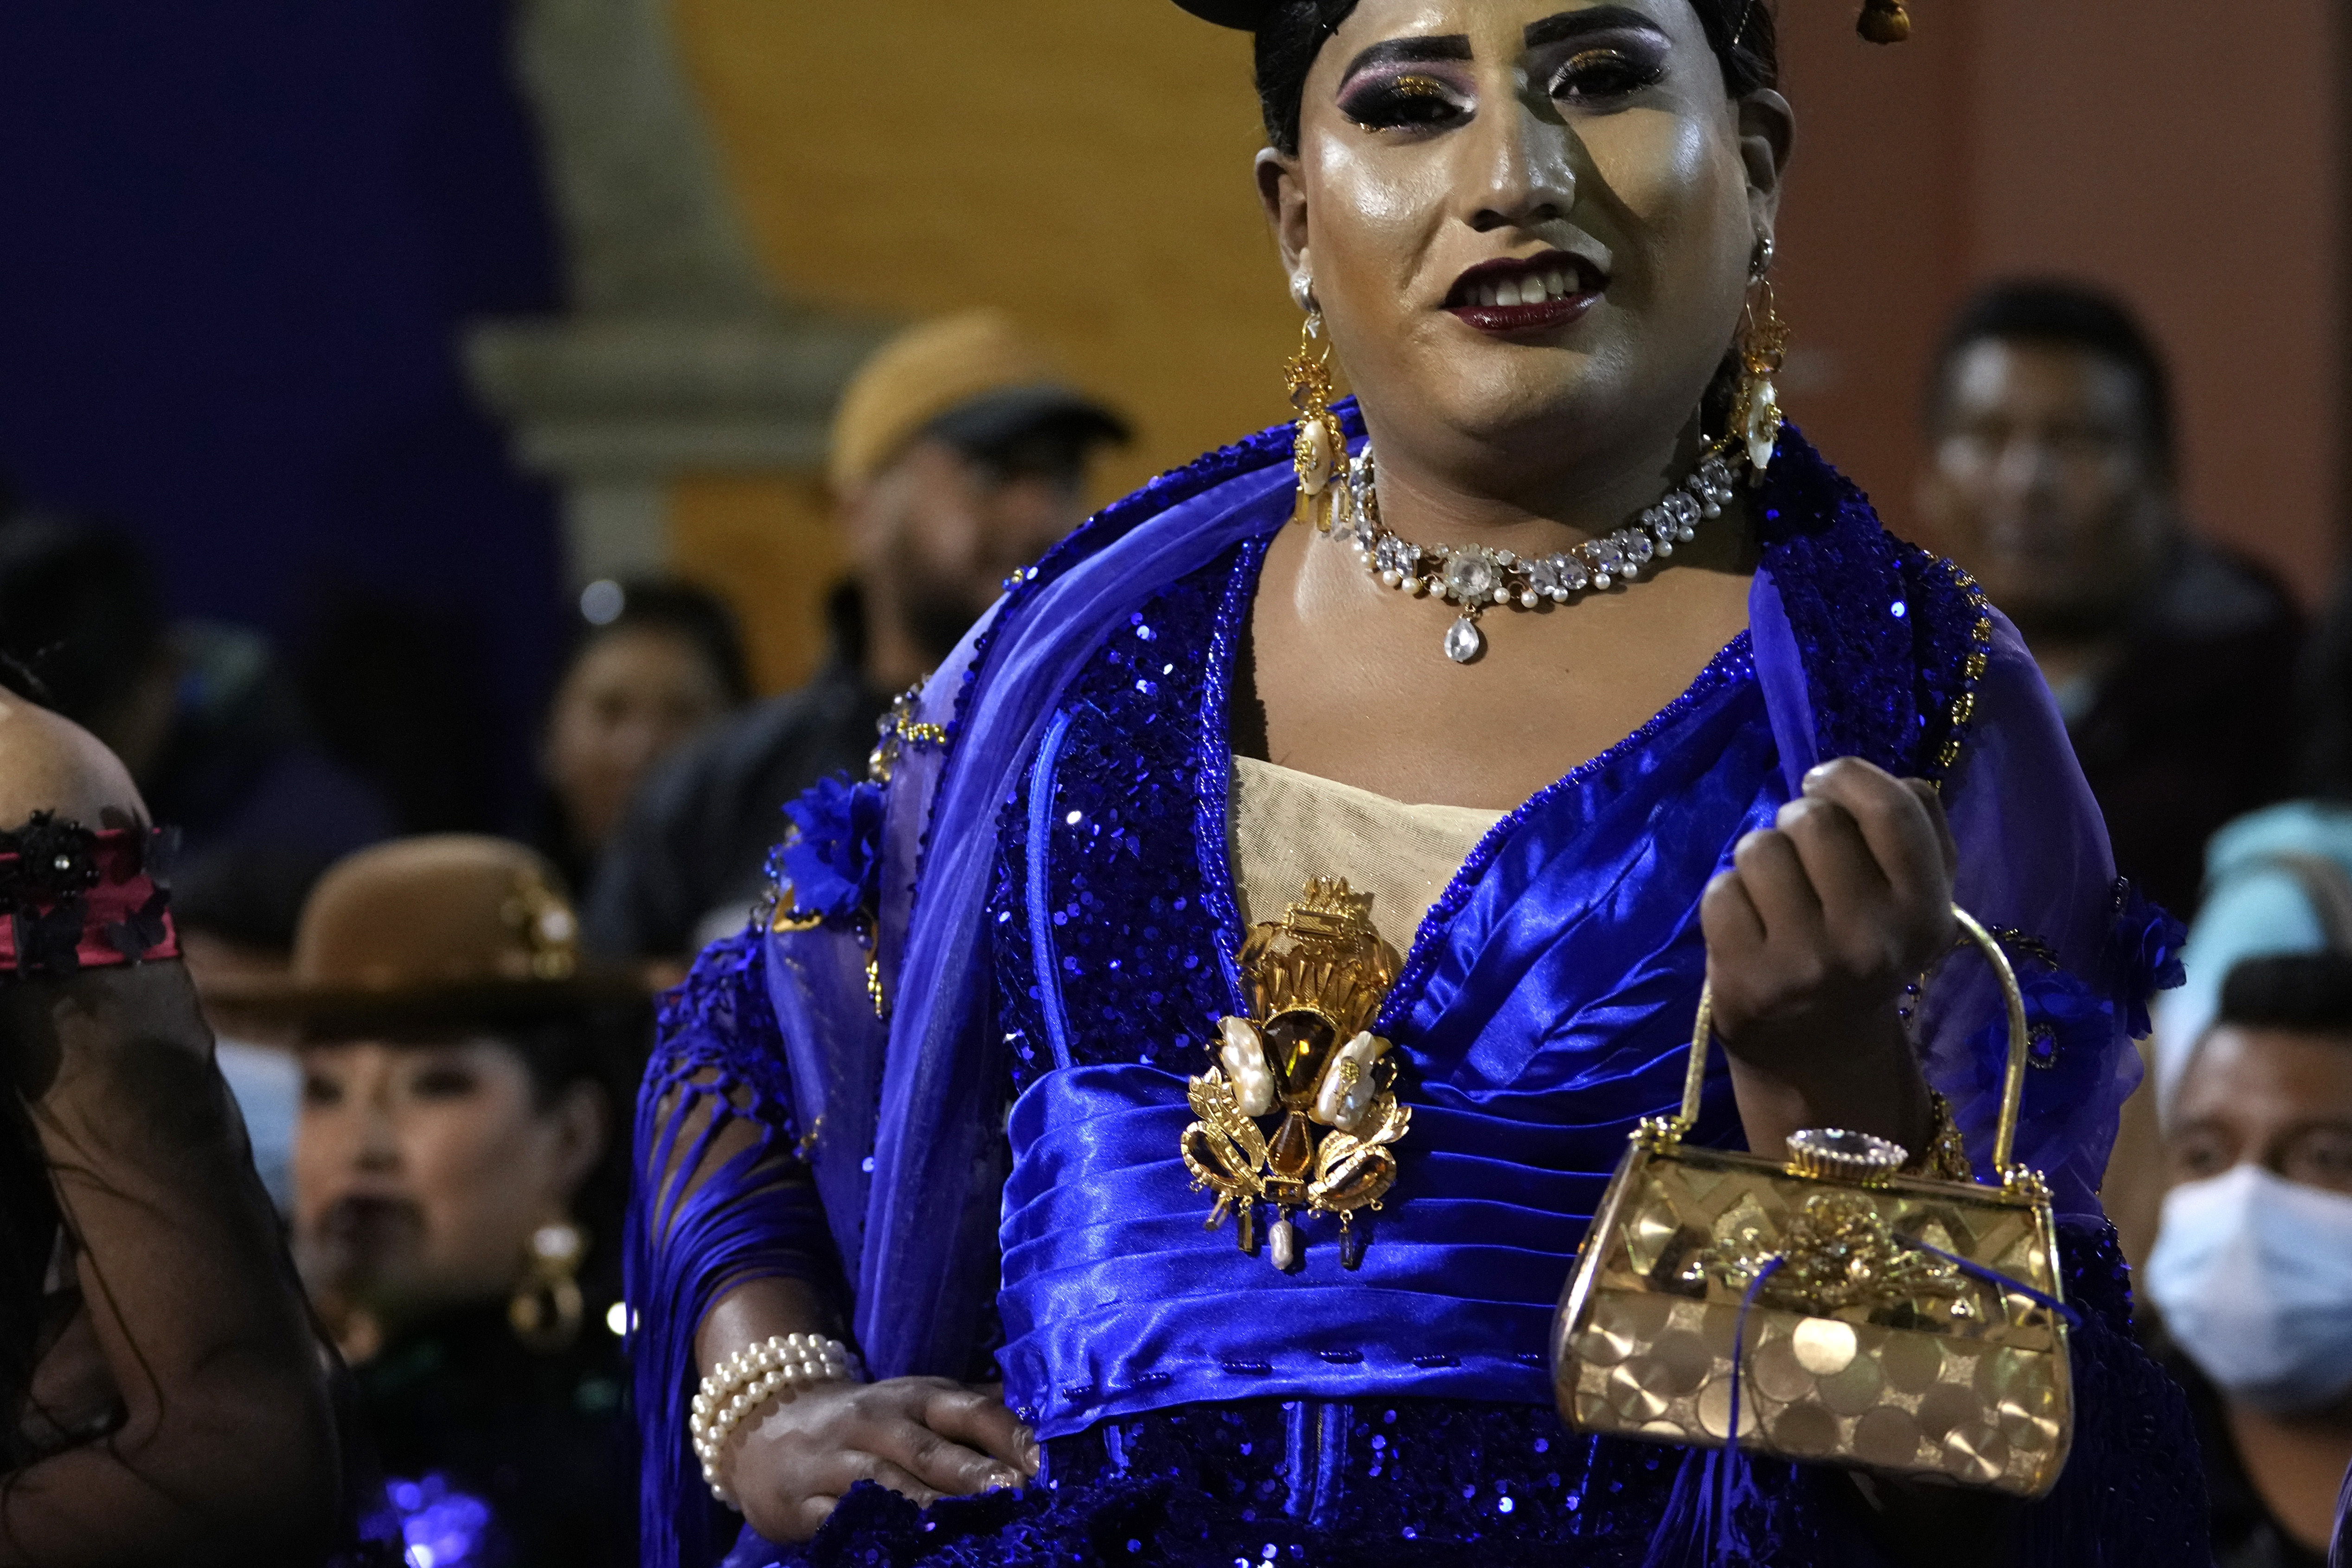 Una persona desfila con la vestimenta típica de las mujeres bolivianas durante la elección de Cholita Transformista, organizada por al comunidad LGBT en La Paz, Bolivia, el 28 de enero de 2023. (AP Foto/Juan Karita)